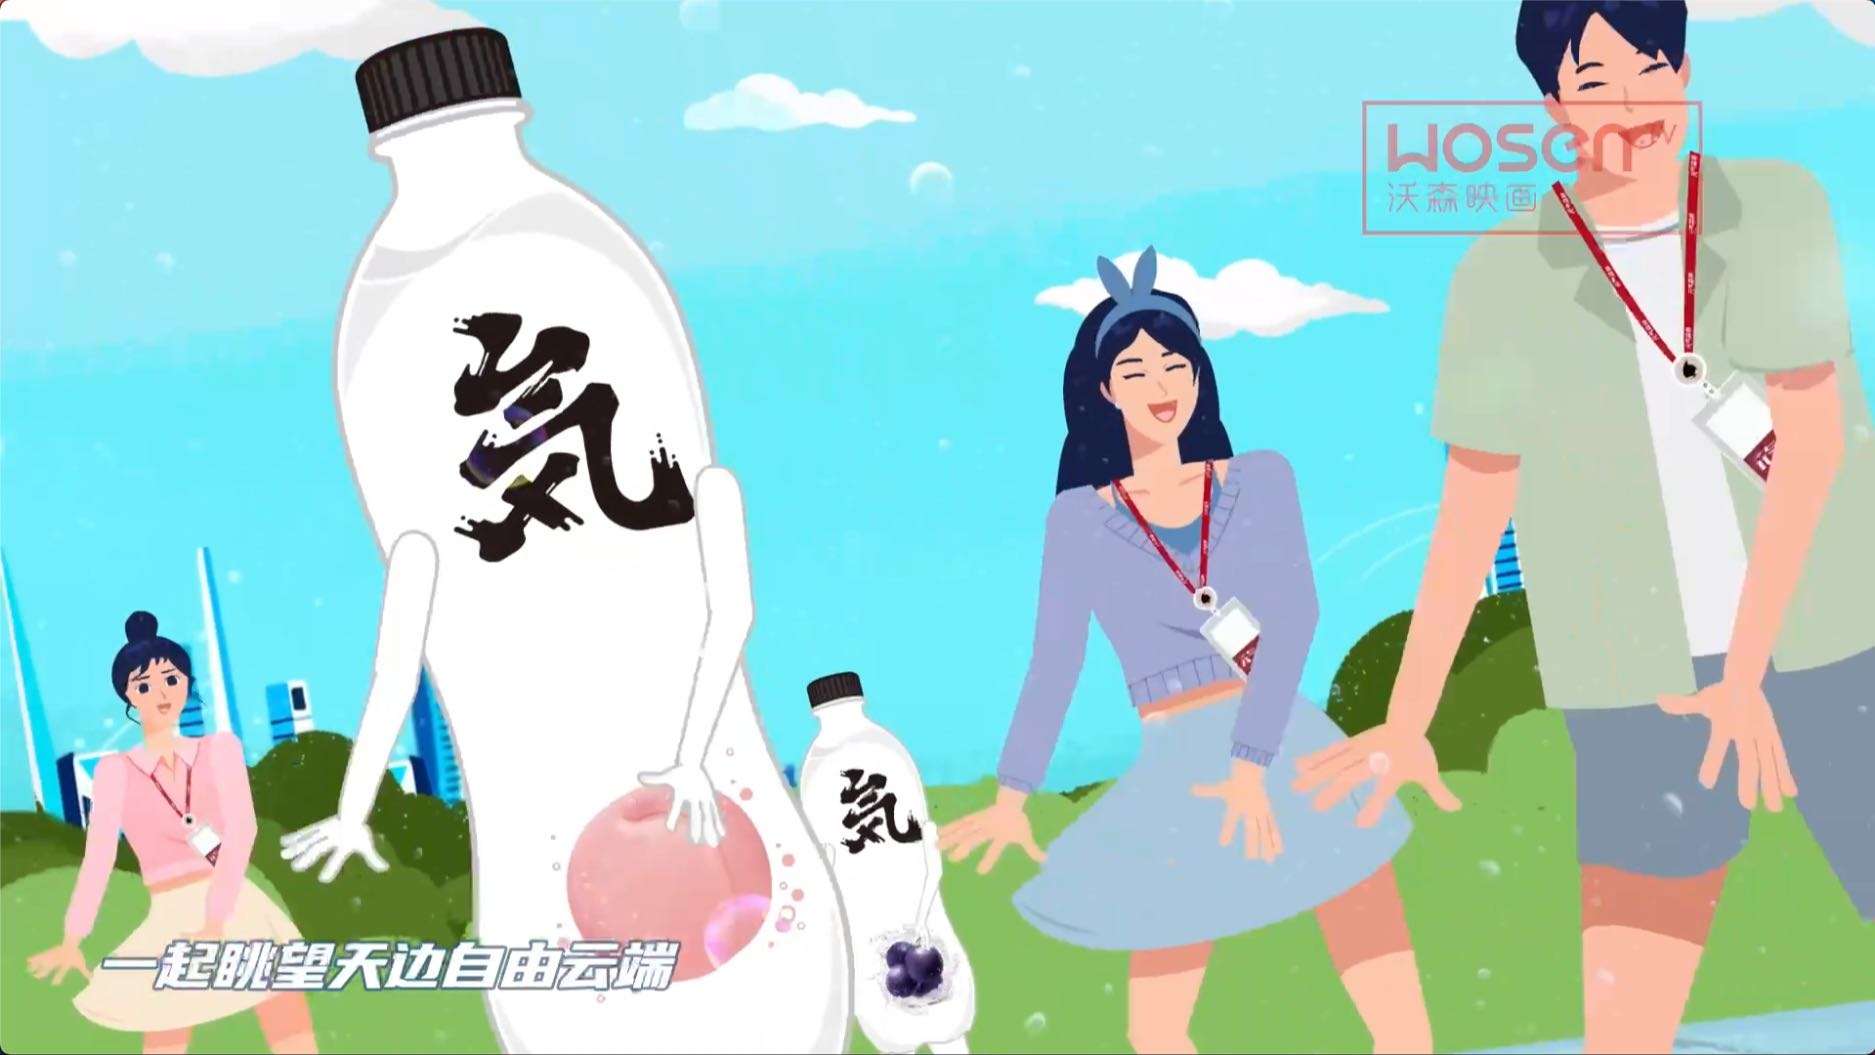 MG动画丨元气森林RAP 食品 饮料 快消品创意动画